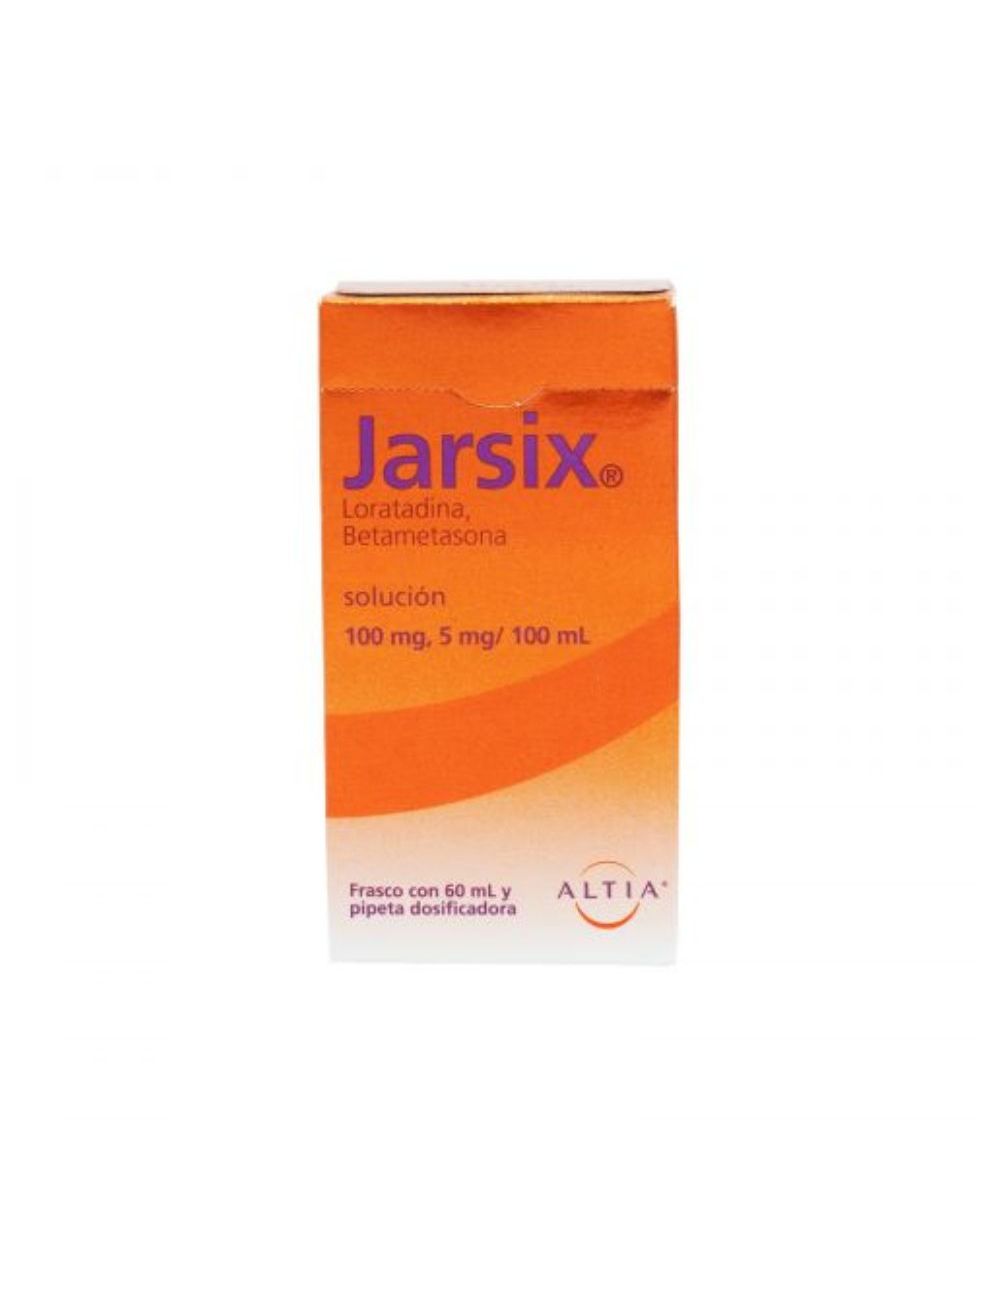 Jarsix 100 mg/5 mg Solución Frasco Con 60 mL